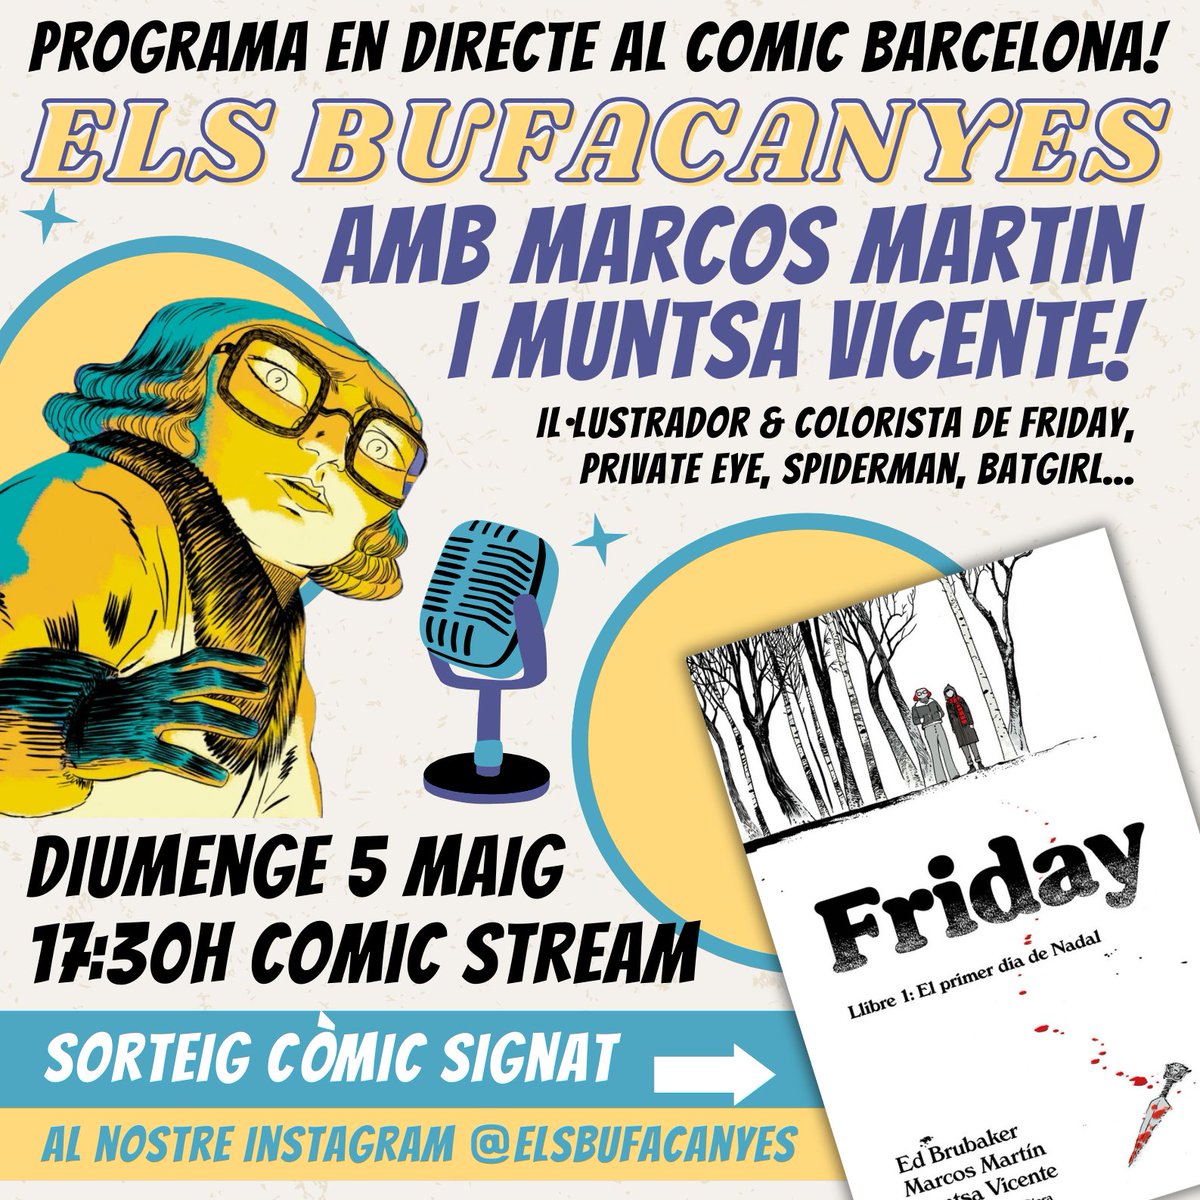 Aquest diumenge, @elsbufacanyes seran al Comic Barcelona amb un programa en directe en el que podreu escoltar una entrevista a Marcos Martín i Muntsa Vicente, coautors juntament amb Ed Brubaker, de Friday! Ens escoltem el dia 5 a les 17:30h!